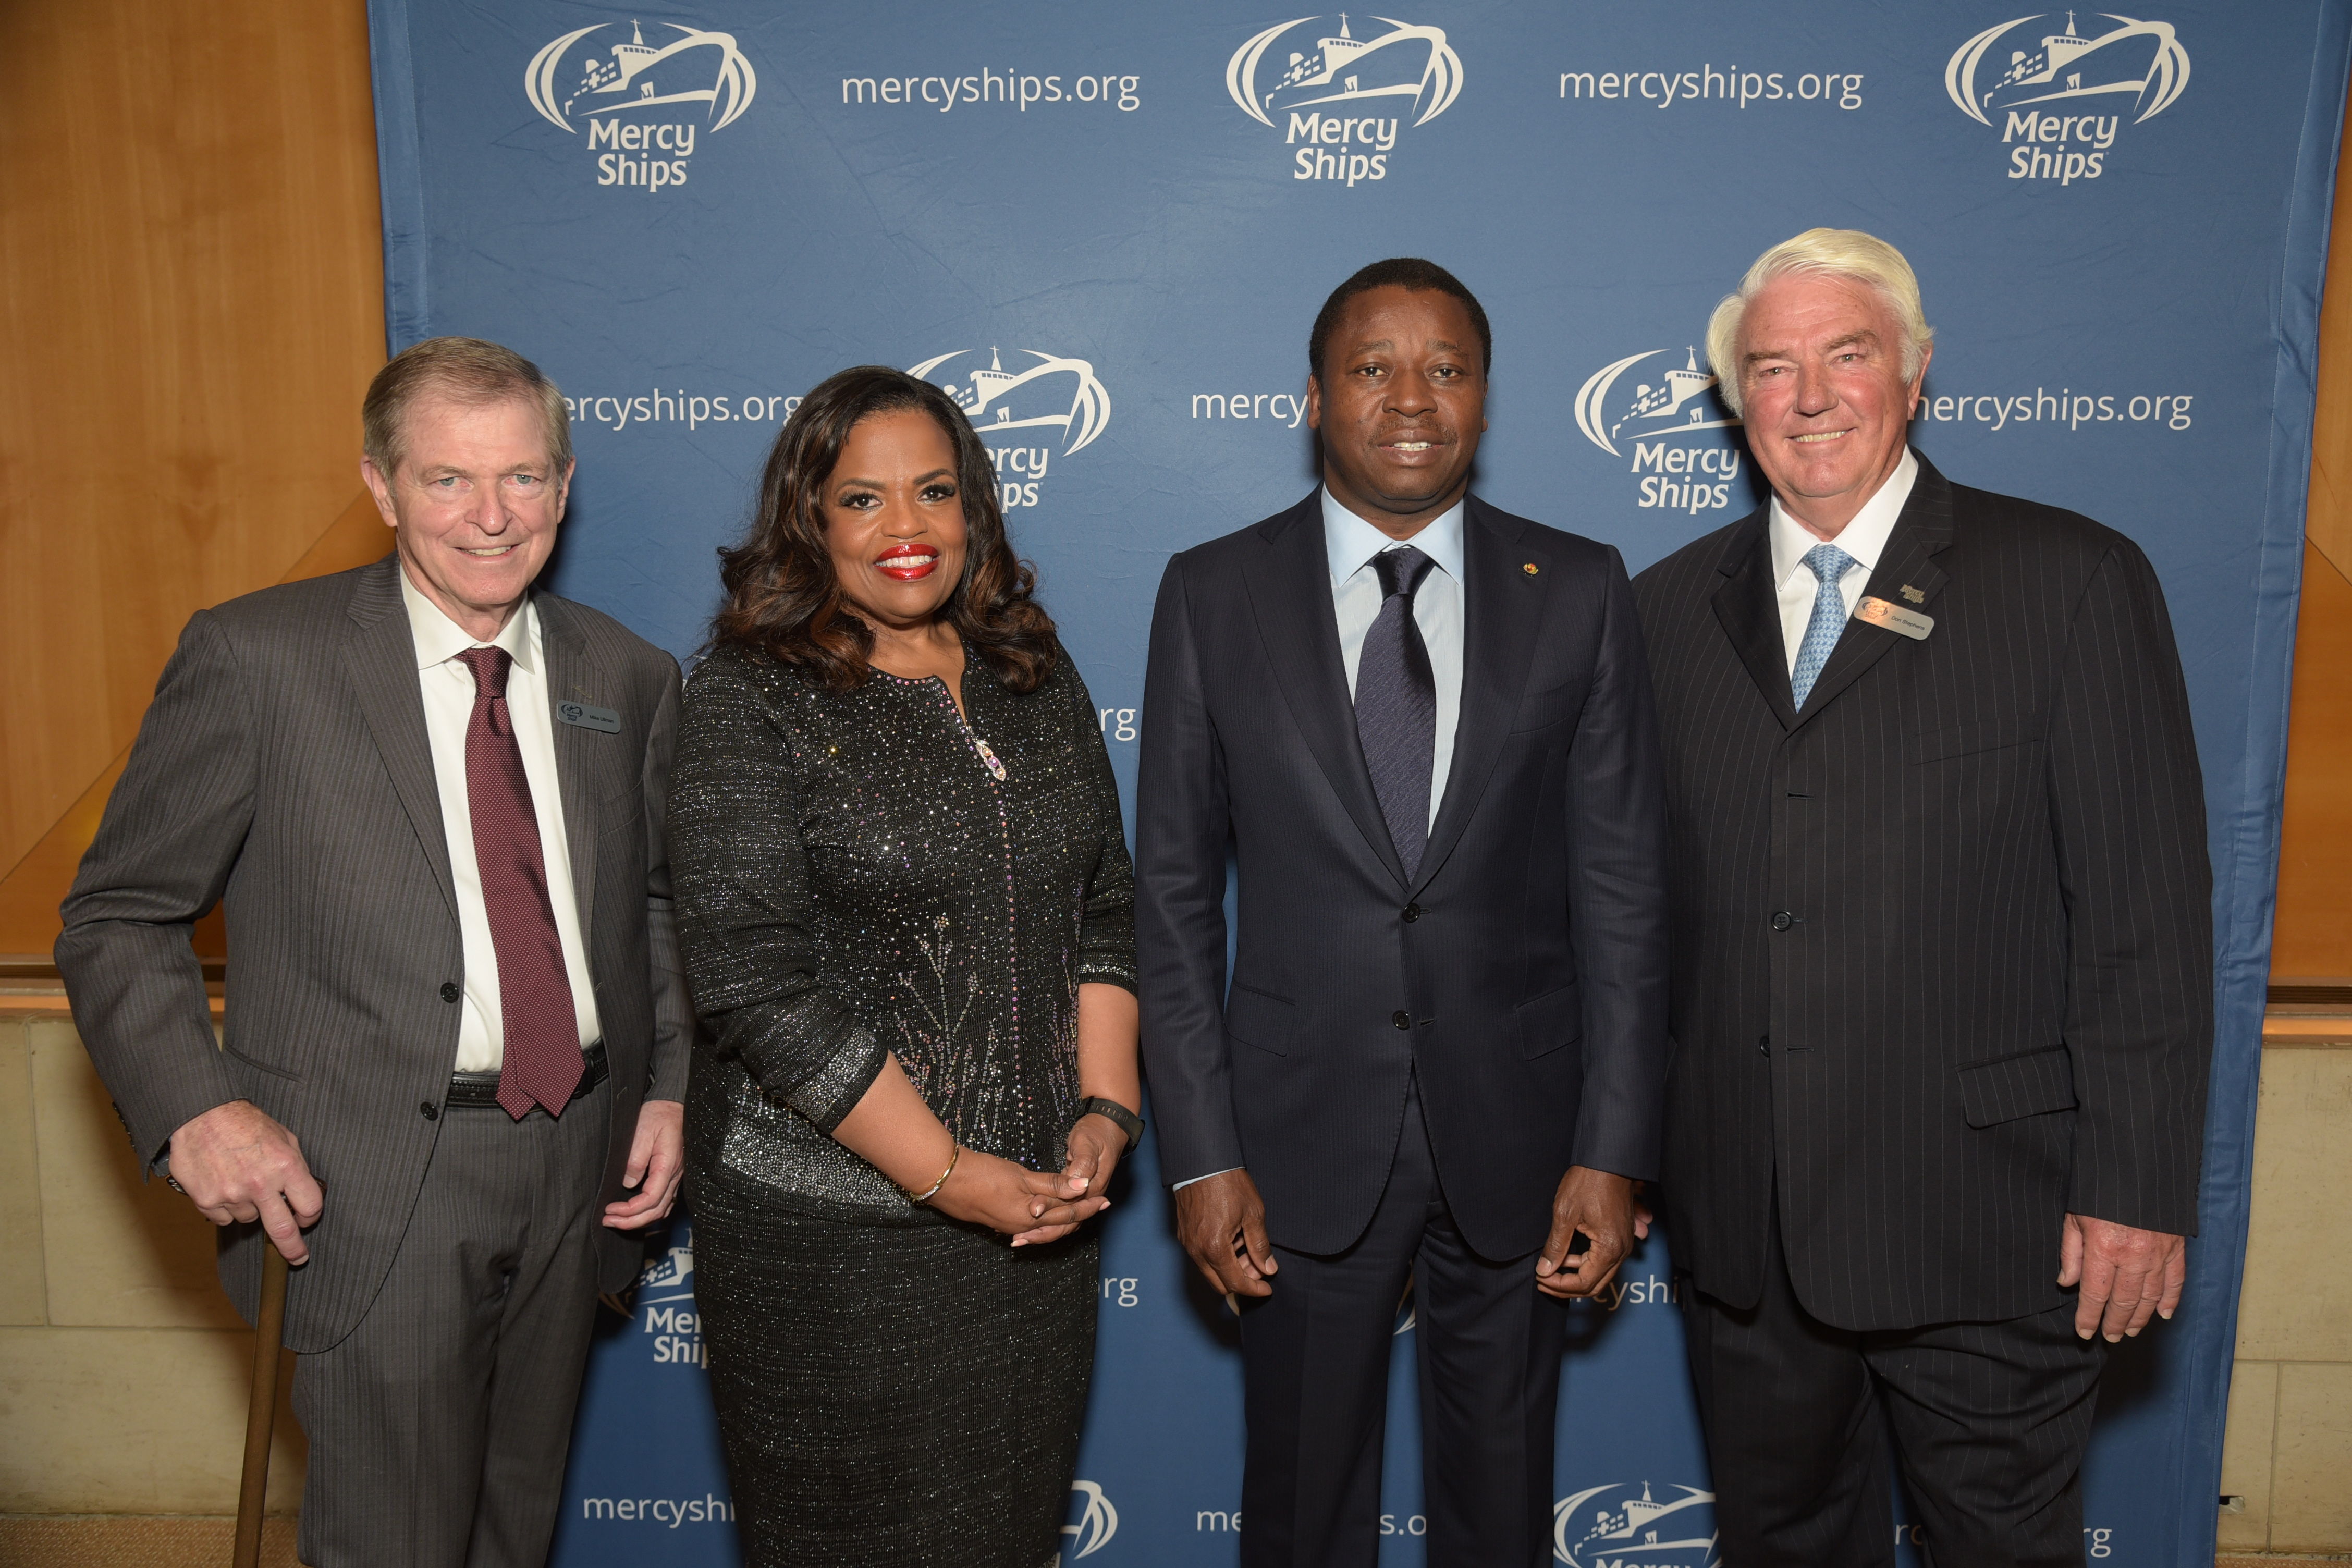 De gauche à droite: Mike Ullman, Président de Mercy Ships International; la Présidente de Mercy Ships Rosa Whitaker; Son Excellence Monsieur Faure Gnassingbé, Président de la République togolaise; et Don Stephens, fondateur de Mercy Ships.